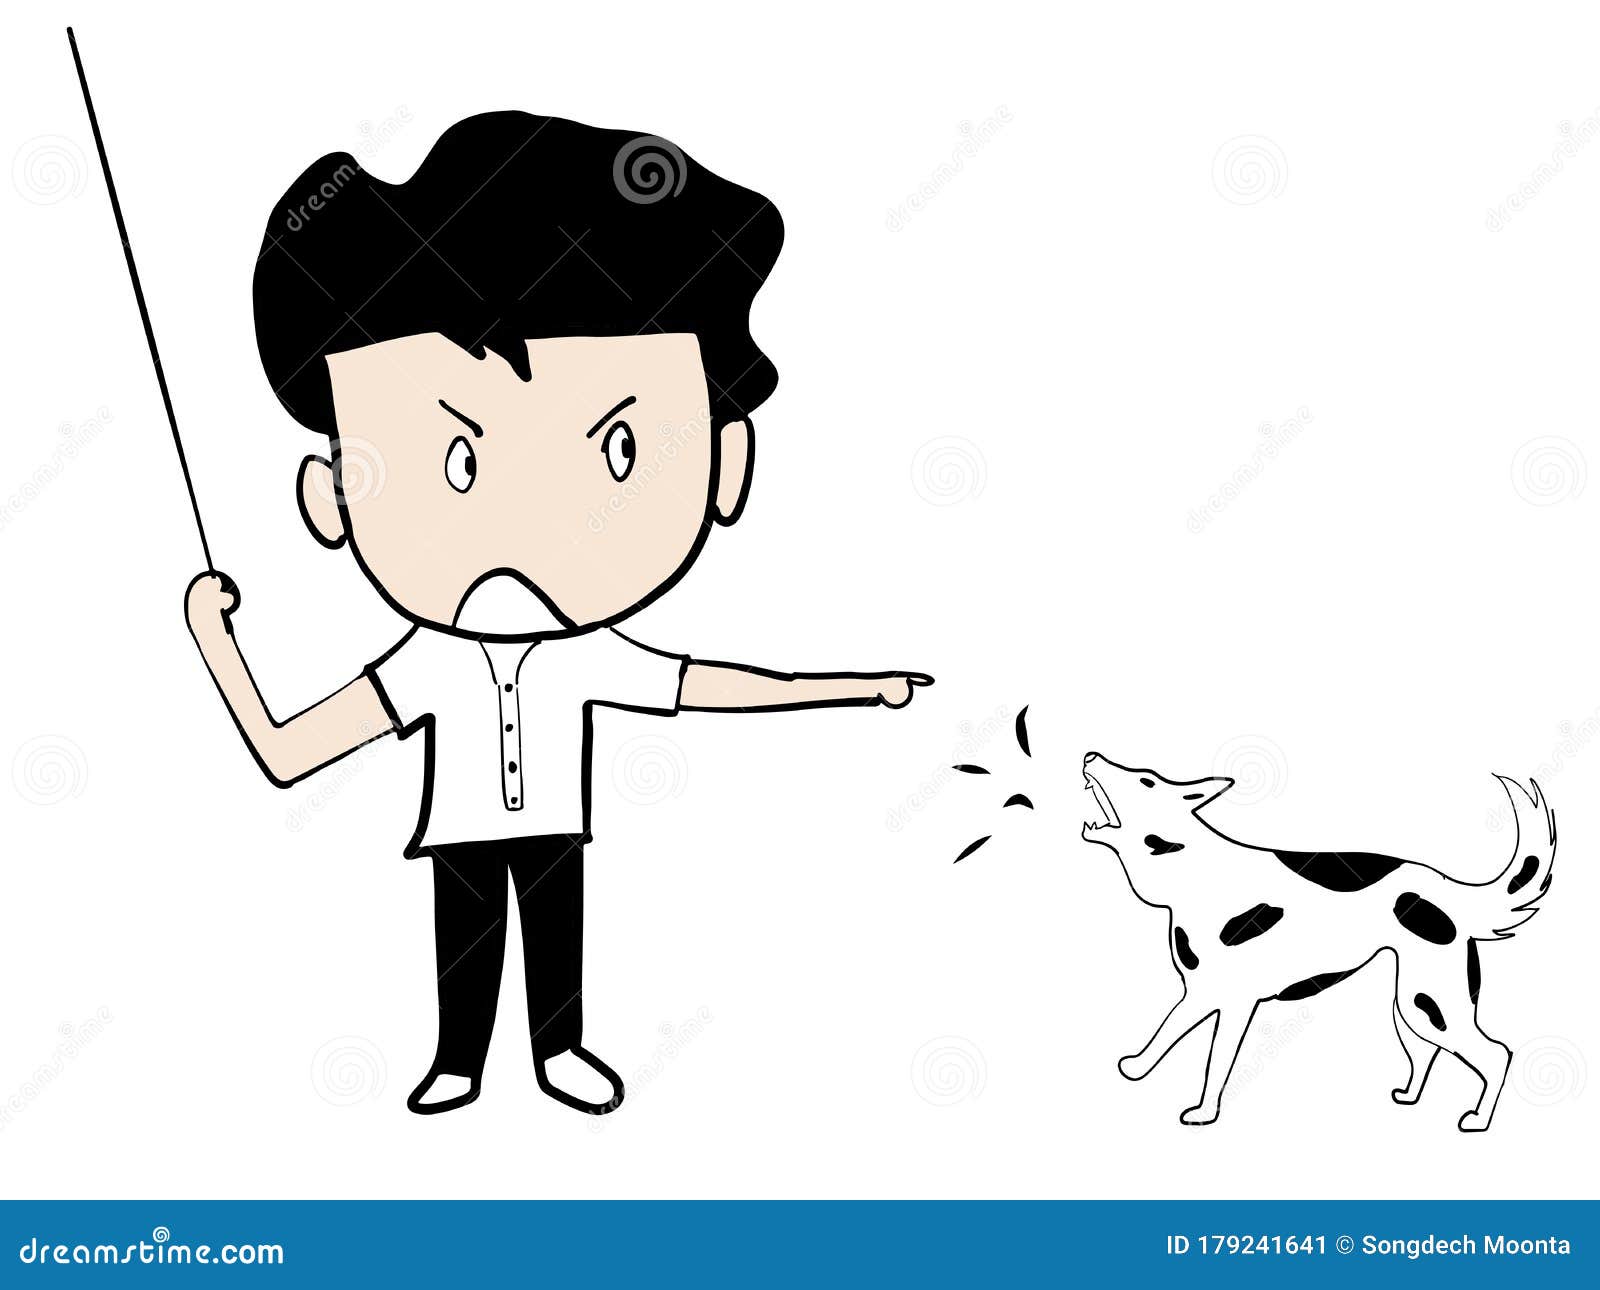 Chase away. Рисунок собака отгоняет воров. A man Barks at a Dog. Как нарисовать мальчика с палкой в руке гоняющий собак. Dog Chasing man funny icon.